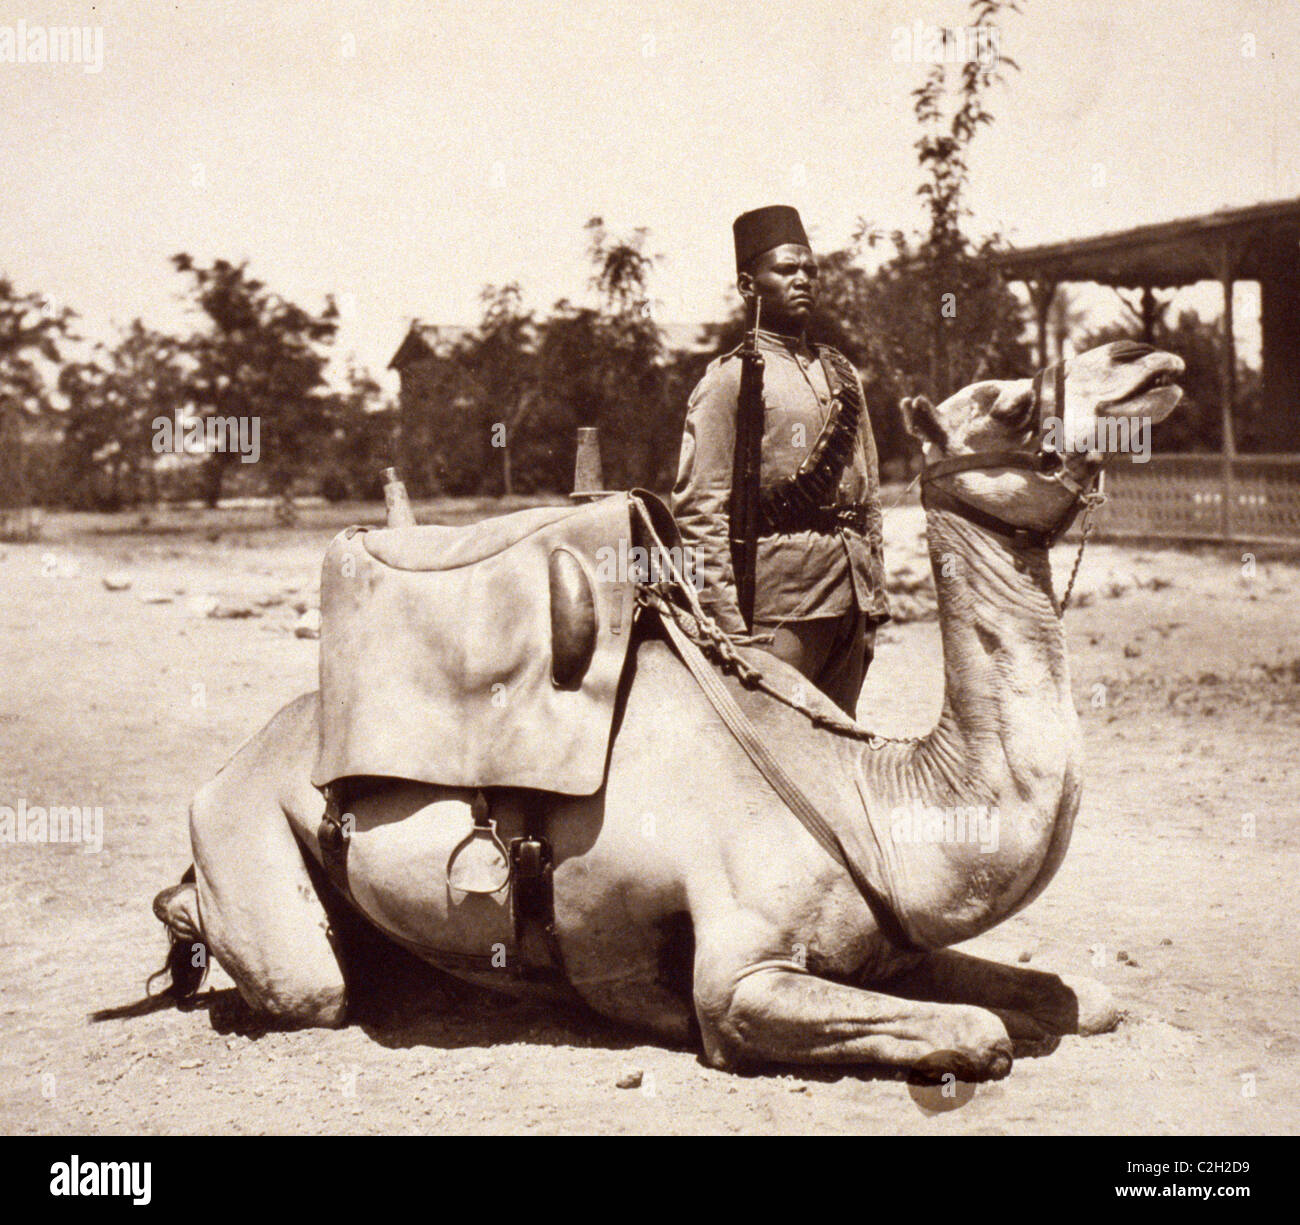 Le Soudan anglo-égyptien - camel soldat des forces indigènes de l'armée britannique Banque D'Images